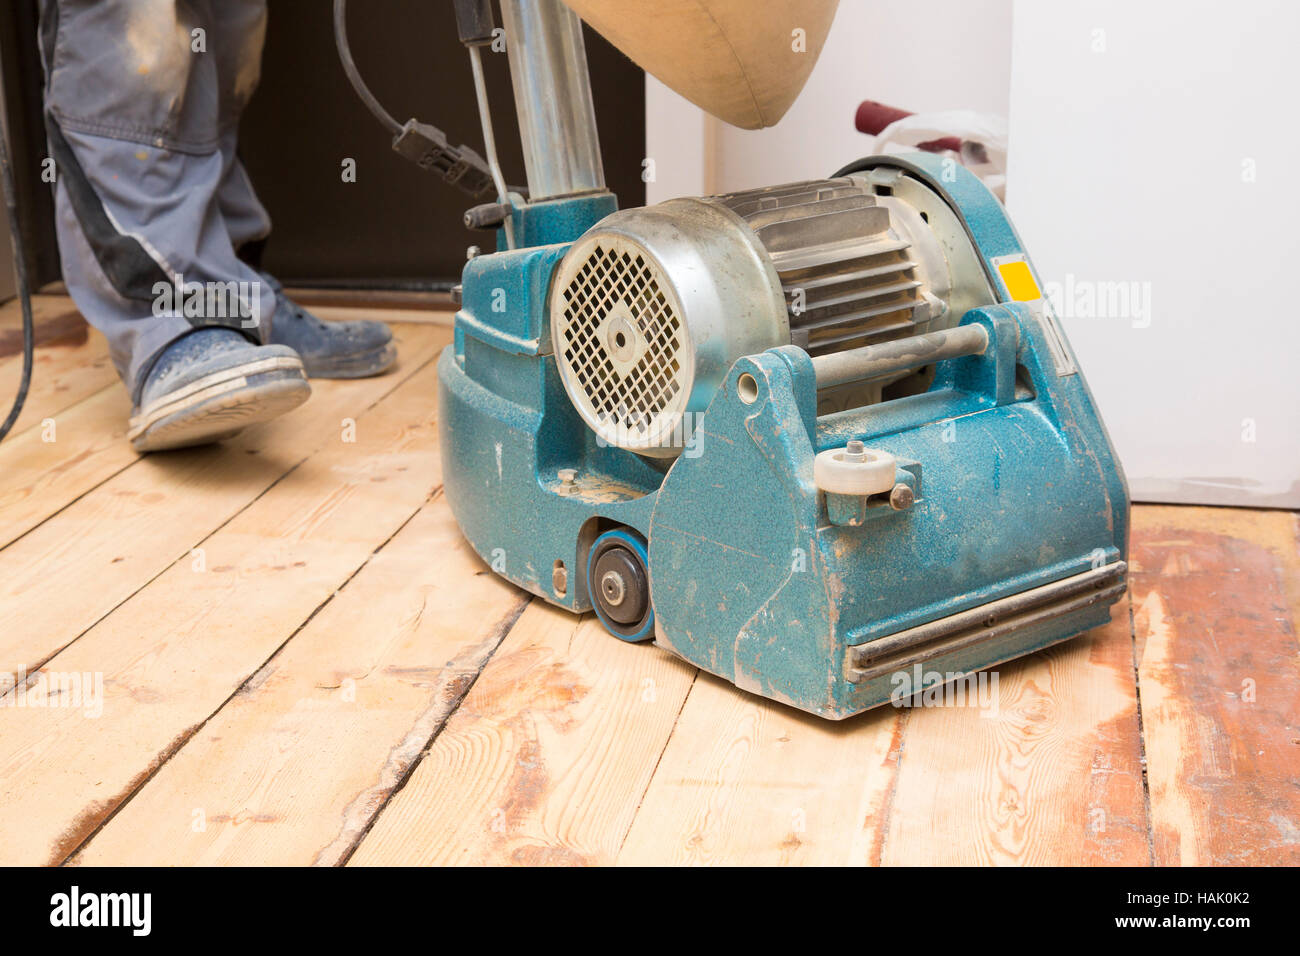 Restaurar el viejo piso de tablones con máquina de molienda Foto de stock